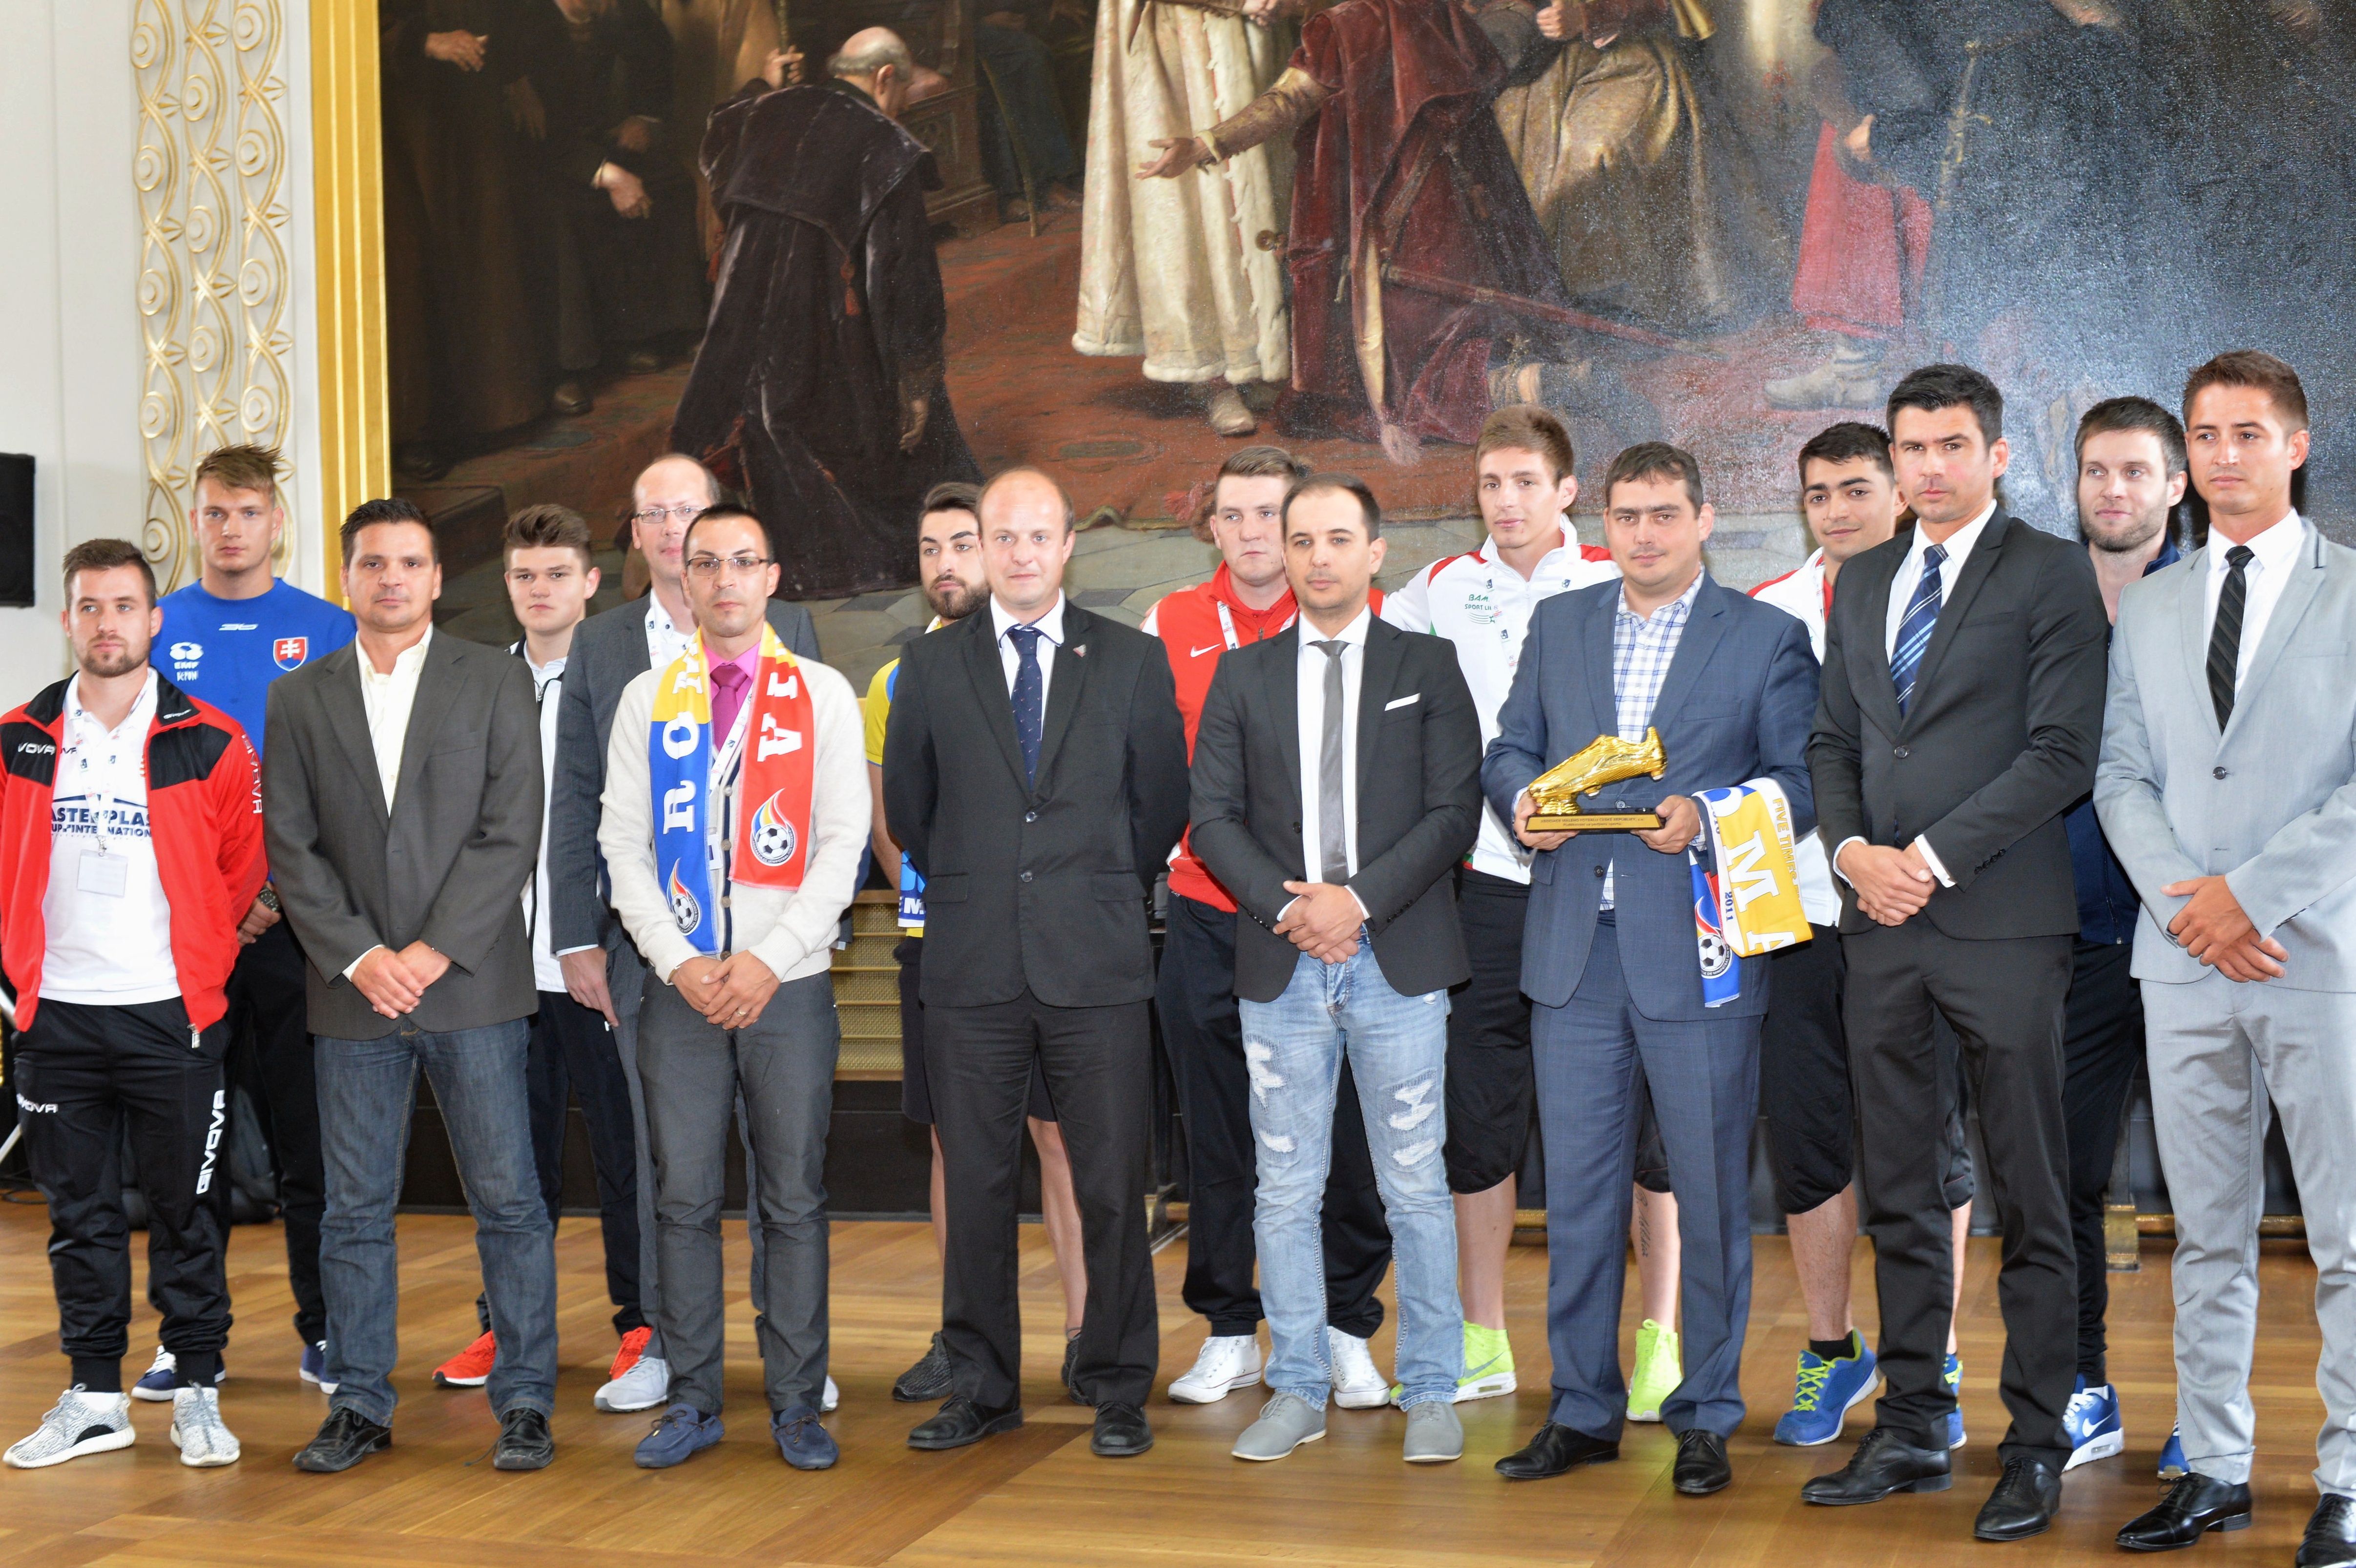 Hráče ze všech osmi zúčastněných zemí dnes v Brožíkově sále Staroměstské radnice přivítal náměstek pražské primátorky pro dopravu a sport Petr Dolínek.